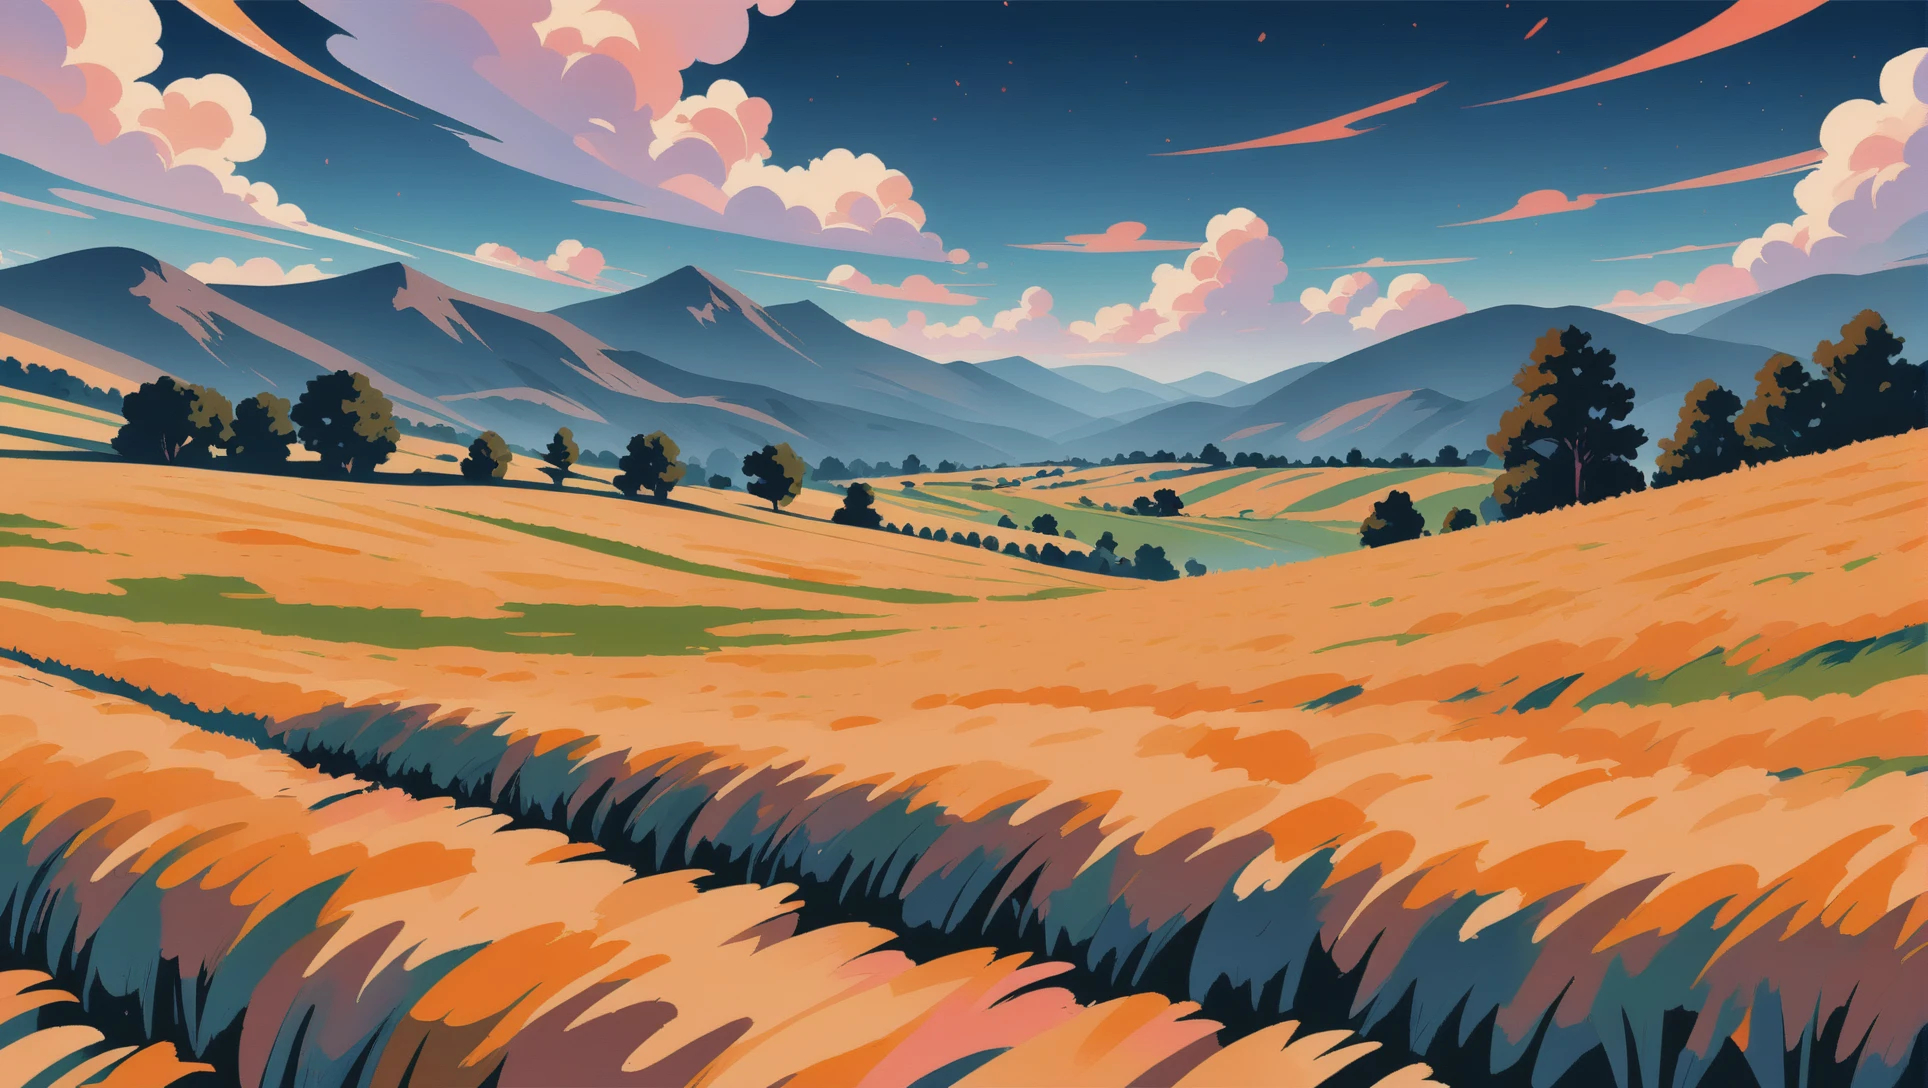 Matte Painting im Anime-Stil, ein Weizenfeld zwischen sanften Hügeln